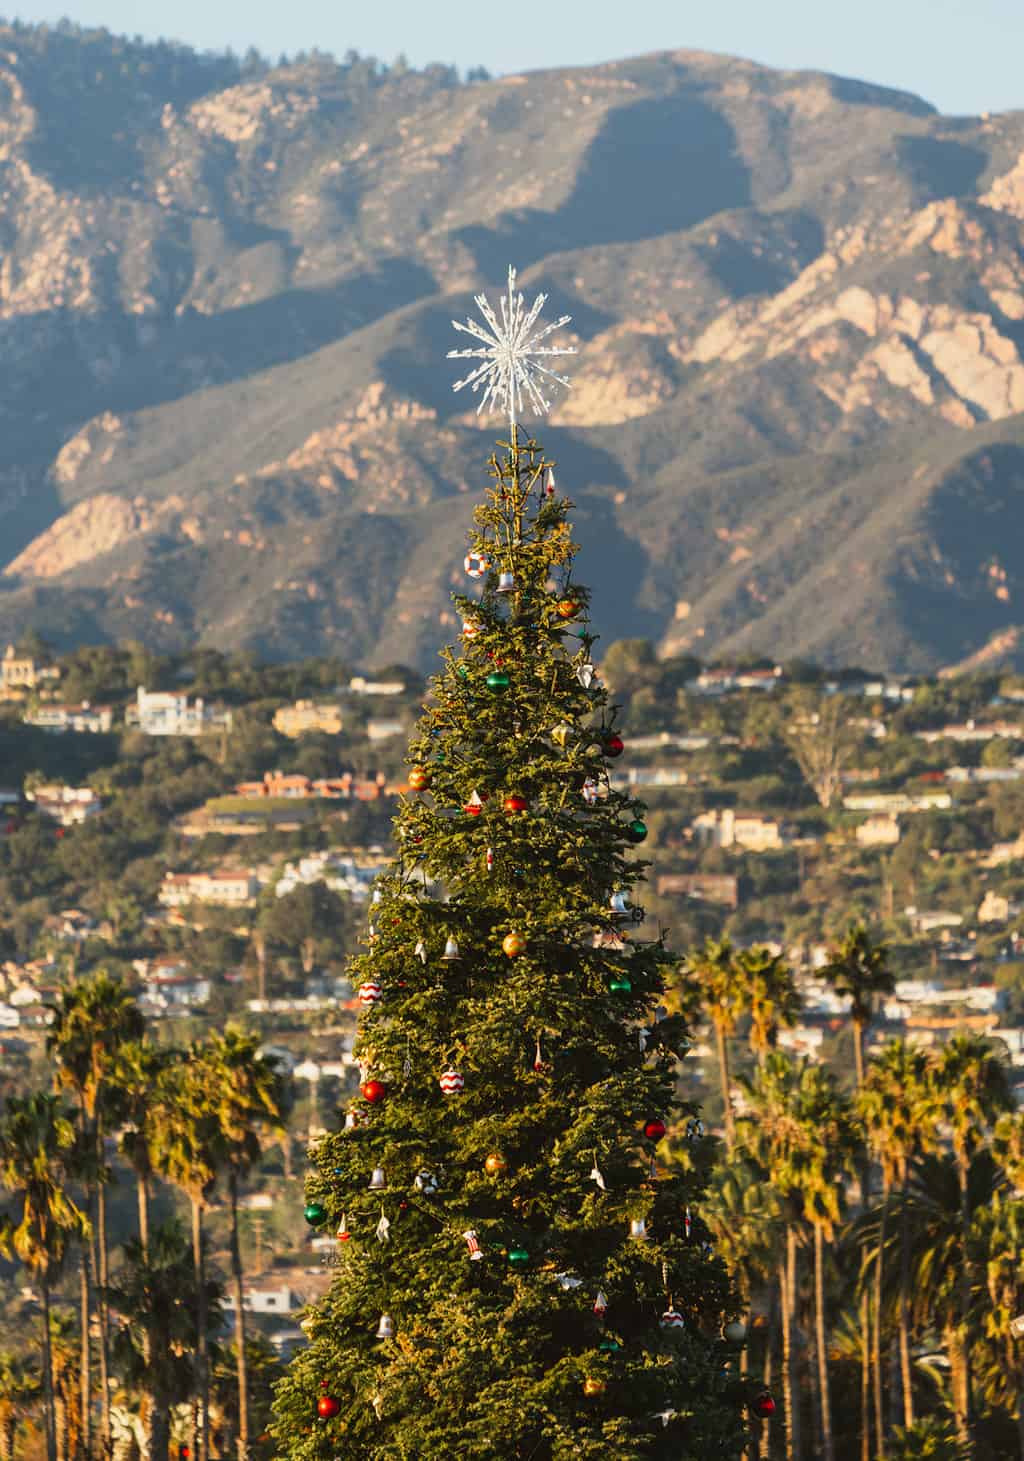 Santa Barbara Christmas tree at Stearns Wharf in California